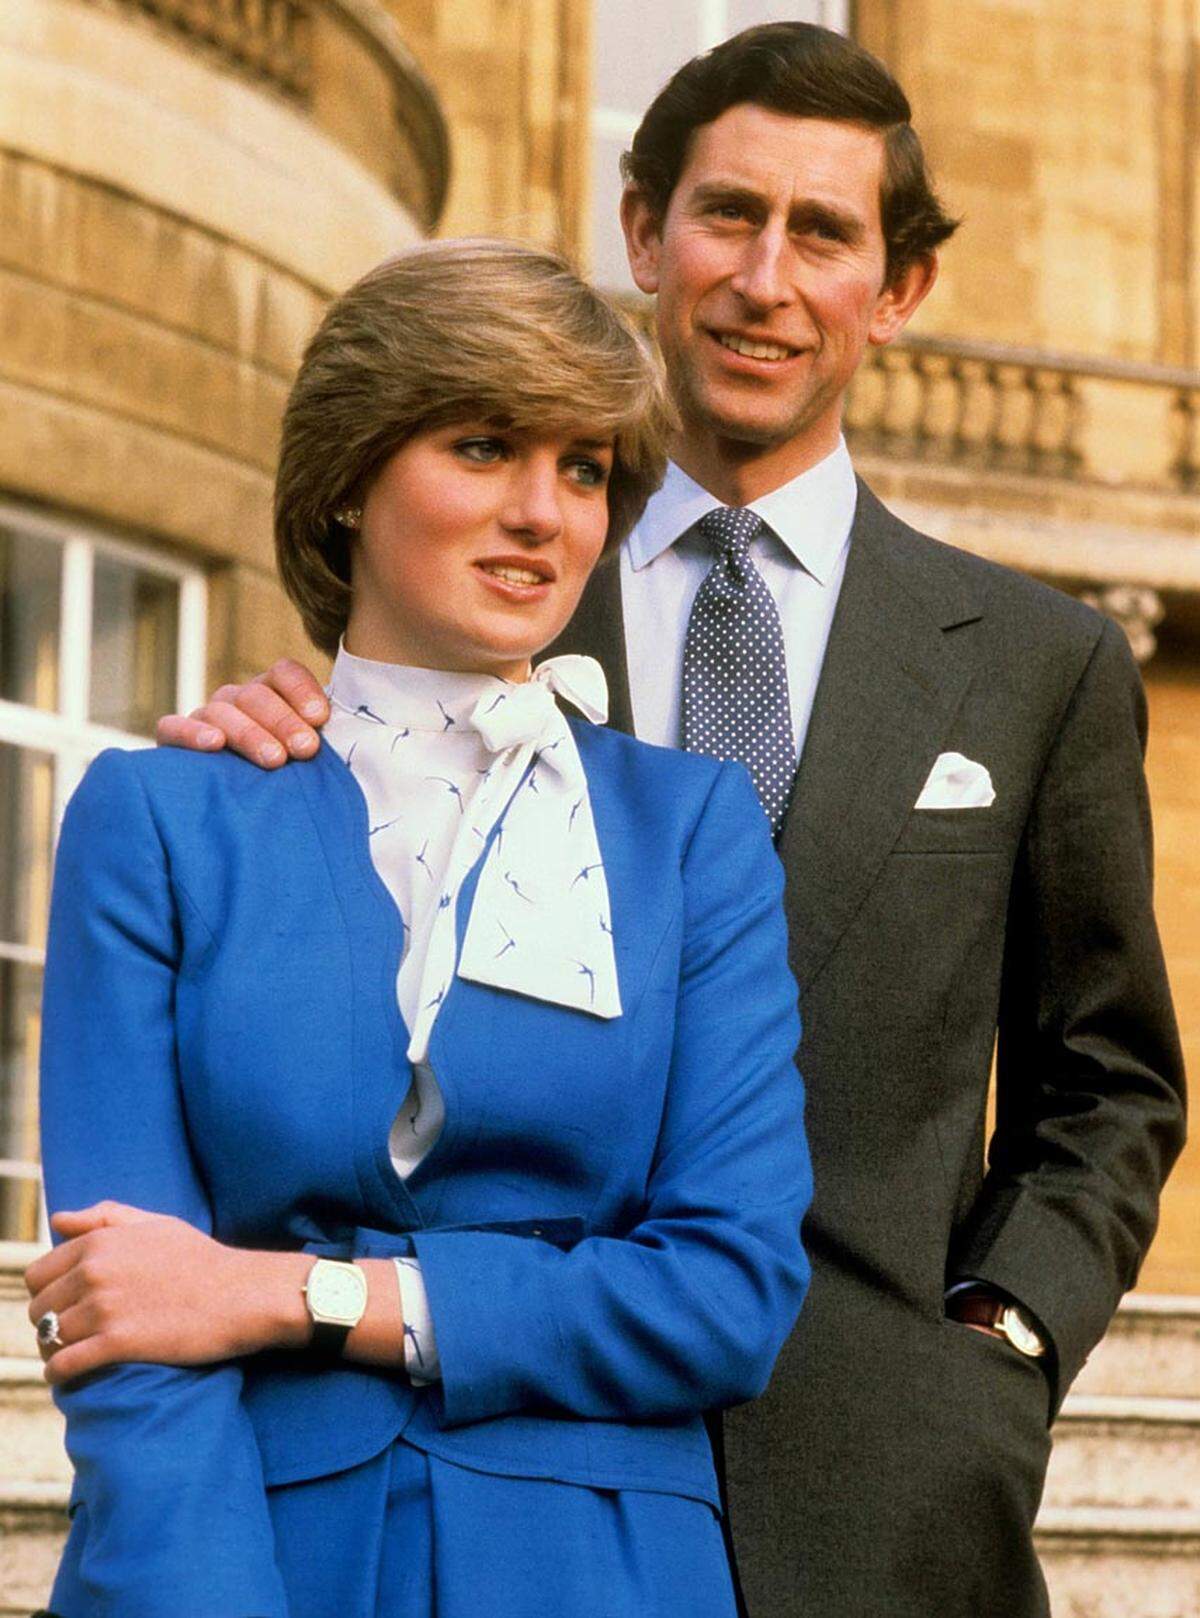 Die Hochzeit findet 30 Jahre nach der Trauung von Prinz Charles und Diana, Williams Eltern, statt. Die damalige Traumhochzeit endete 1996 in einer bitterbösen Scheidung. Prinzessin Diana starb ein Jahr später bei einem Autounfall in Paris.